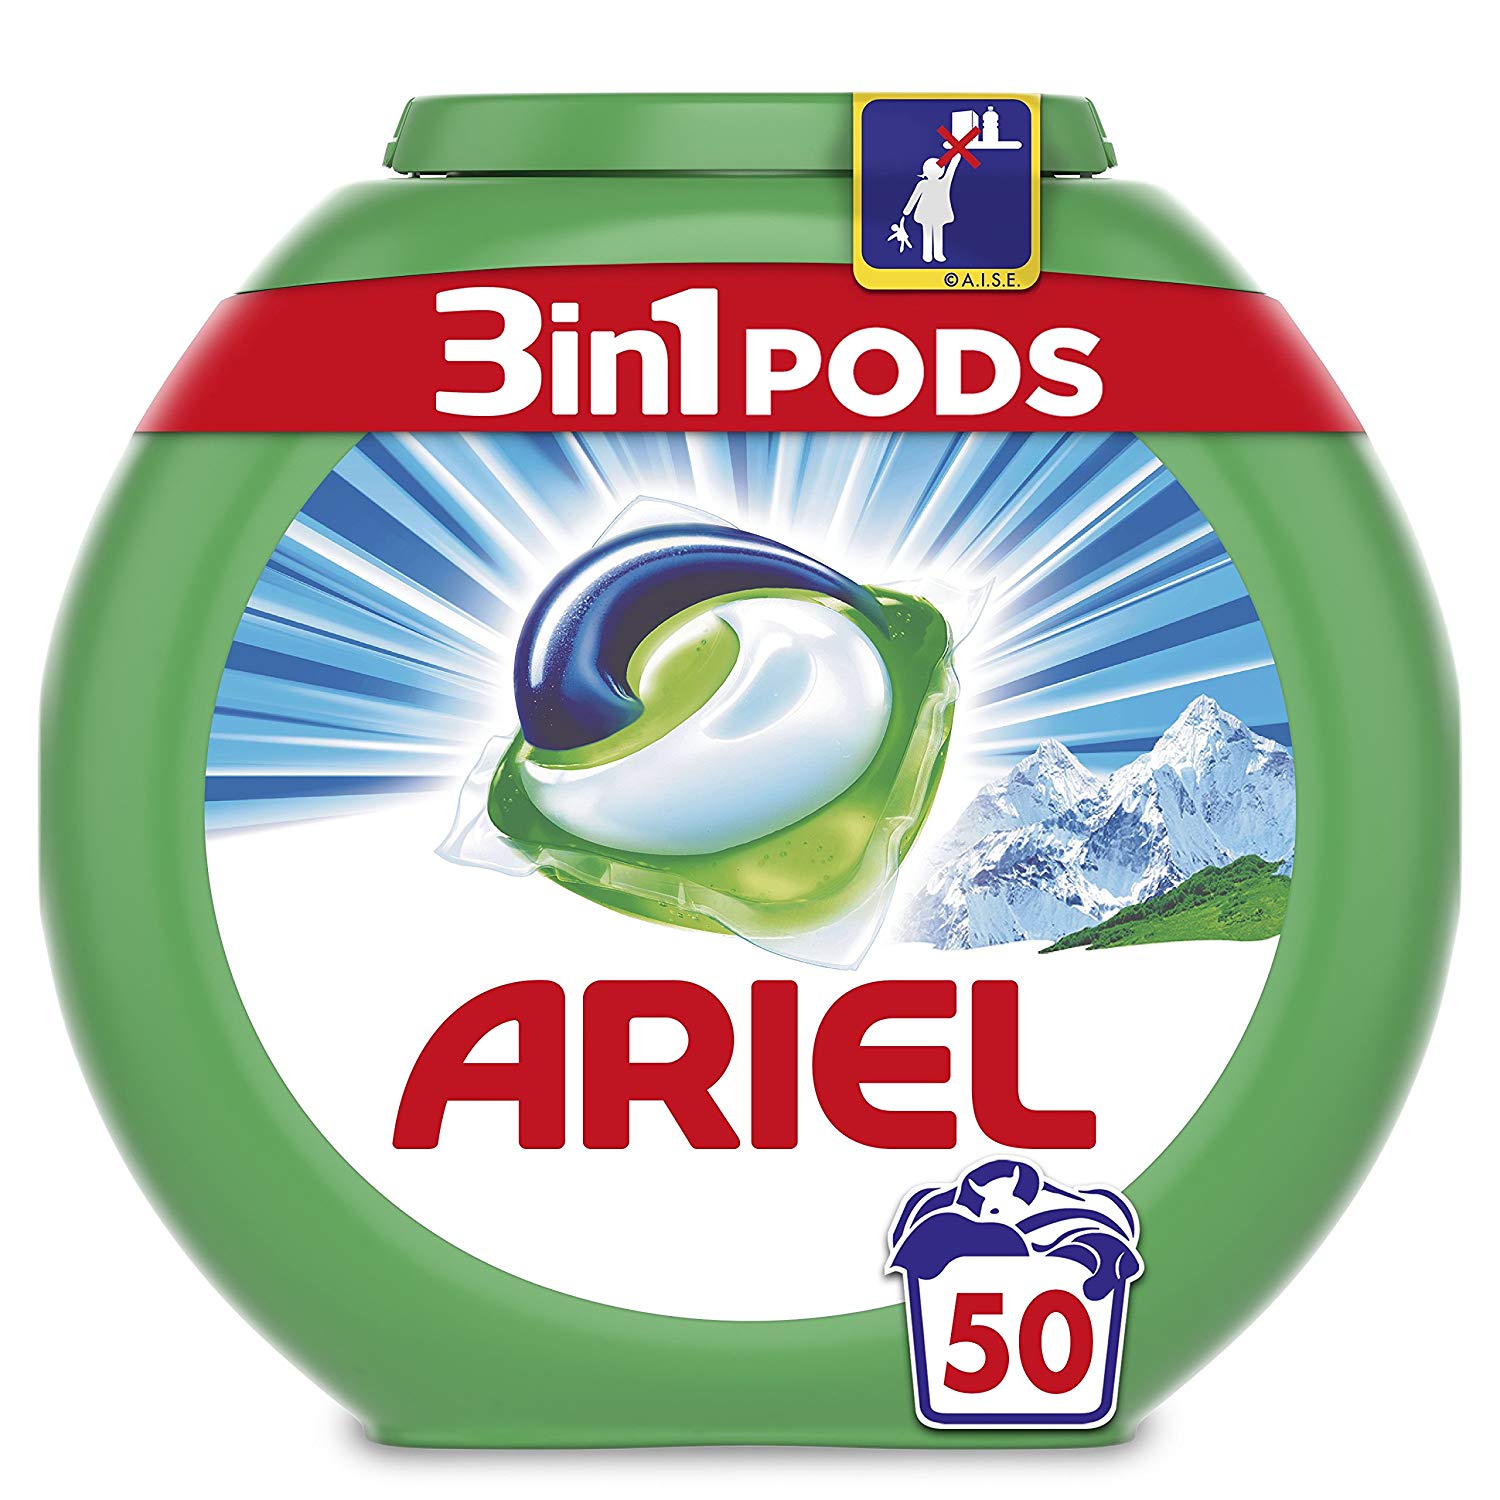 50 lavados con Ariel 3 en 1 pods solo 10,5€